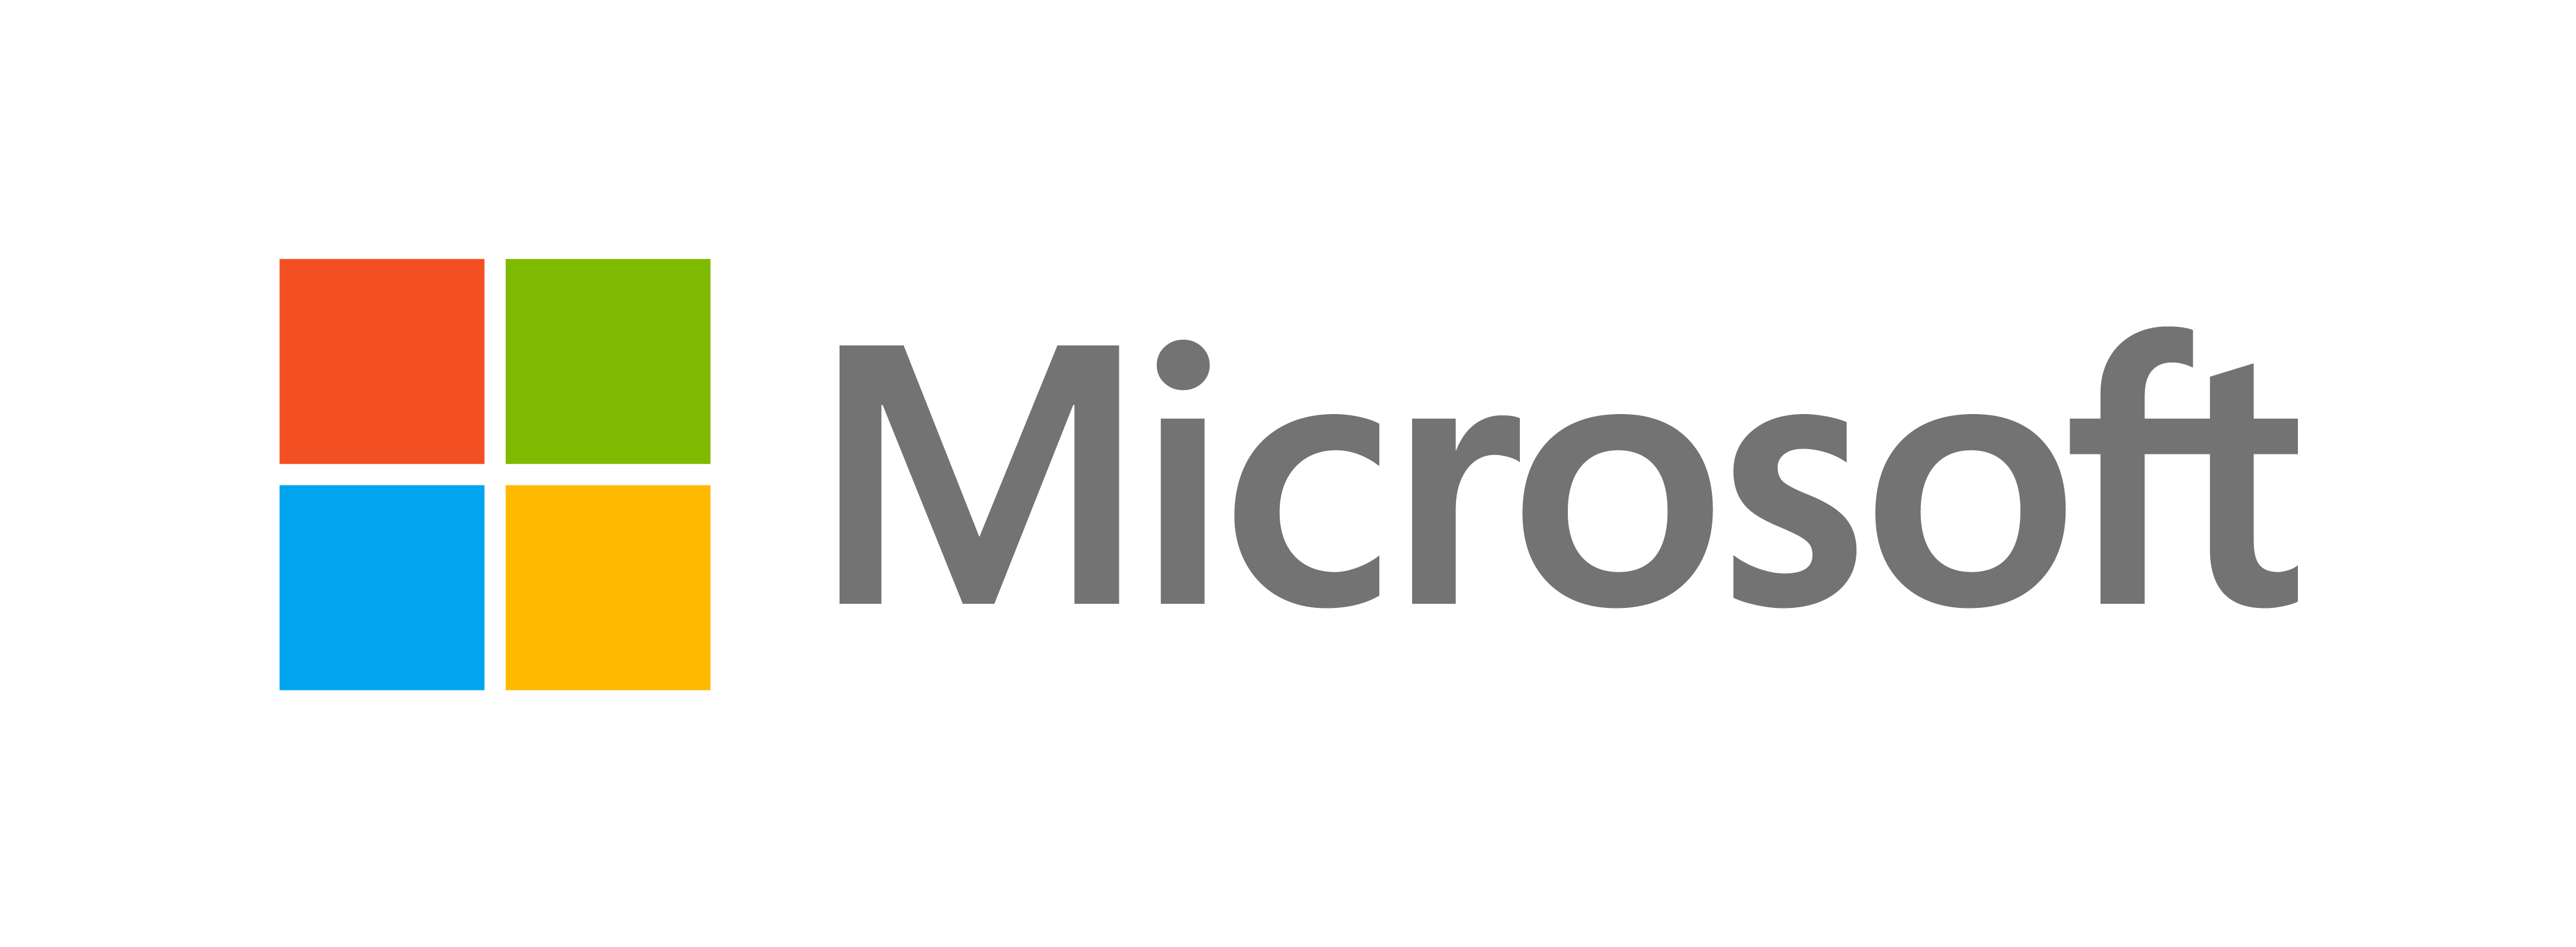 Microsoft julkisti uuden ilmeen – virallinen Microsoft-blogi